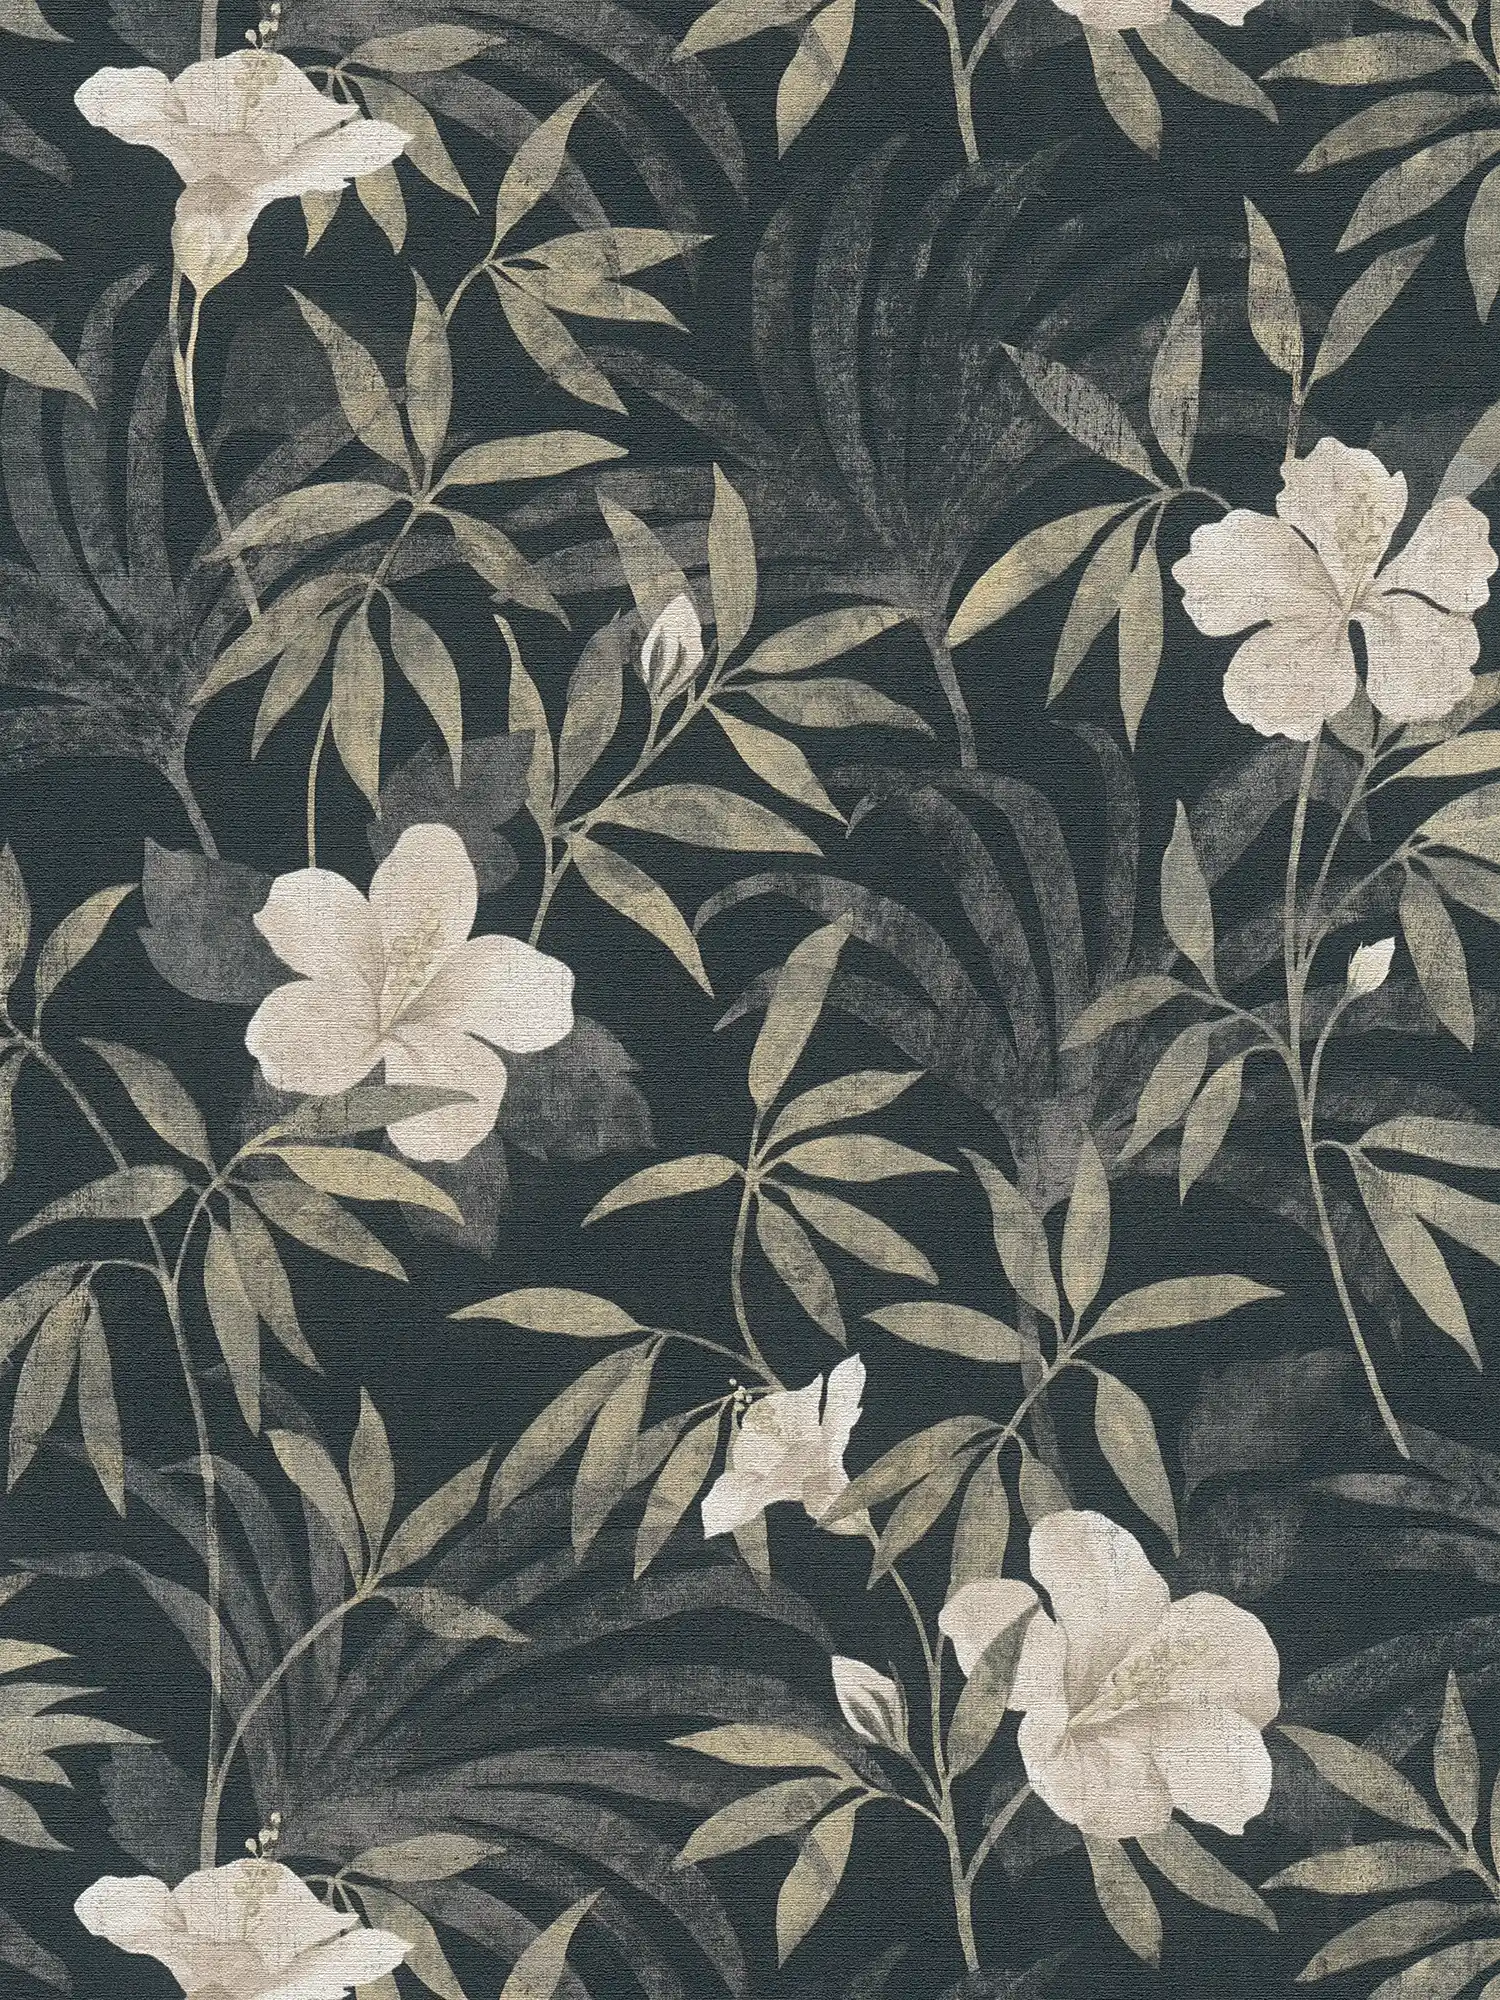 Dschungel Tapete Retro Muster mit tropischem Design – Braun, Grau, Schwarz
